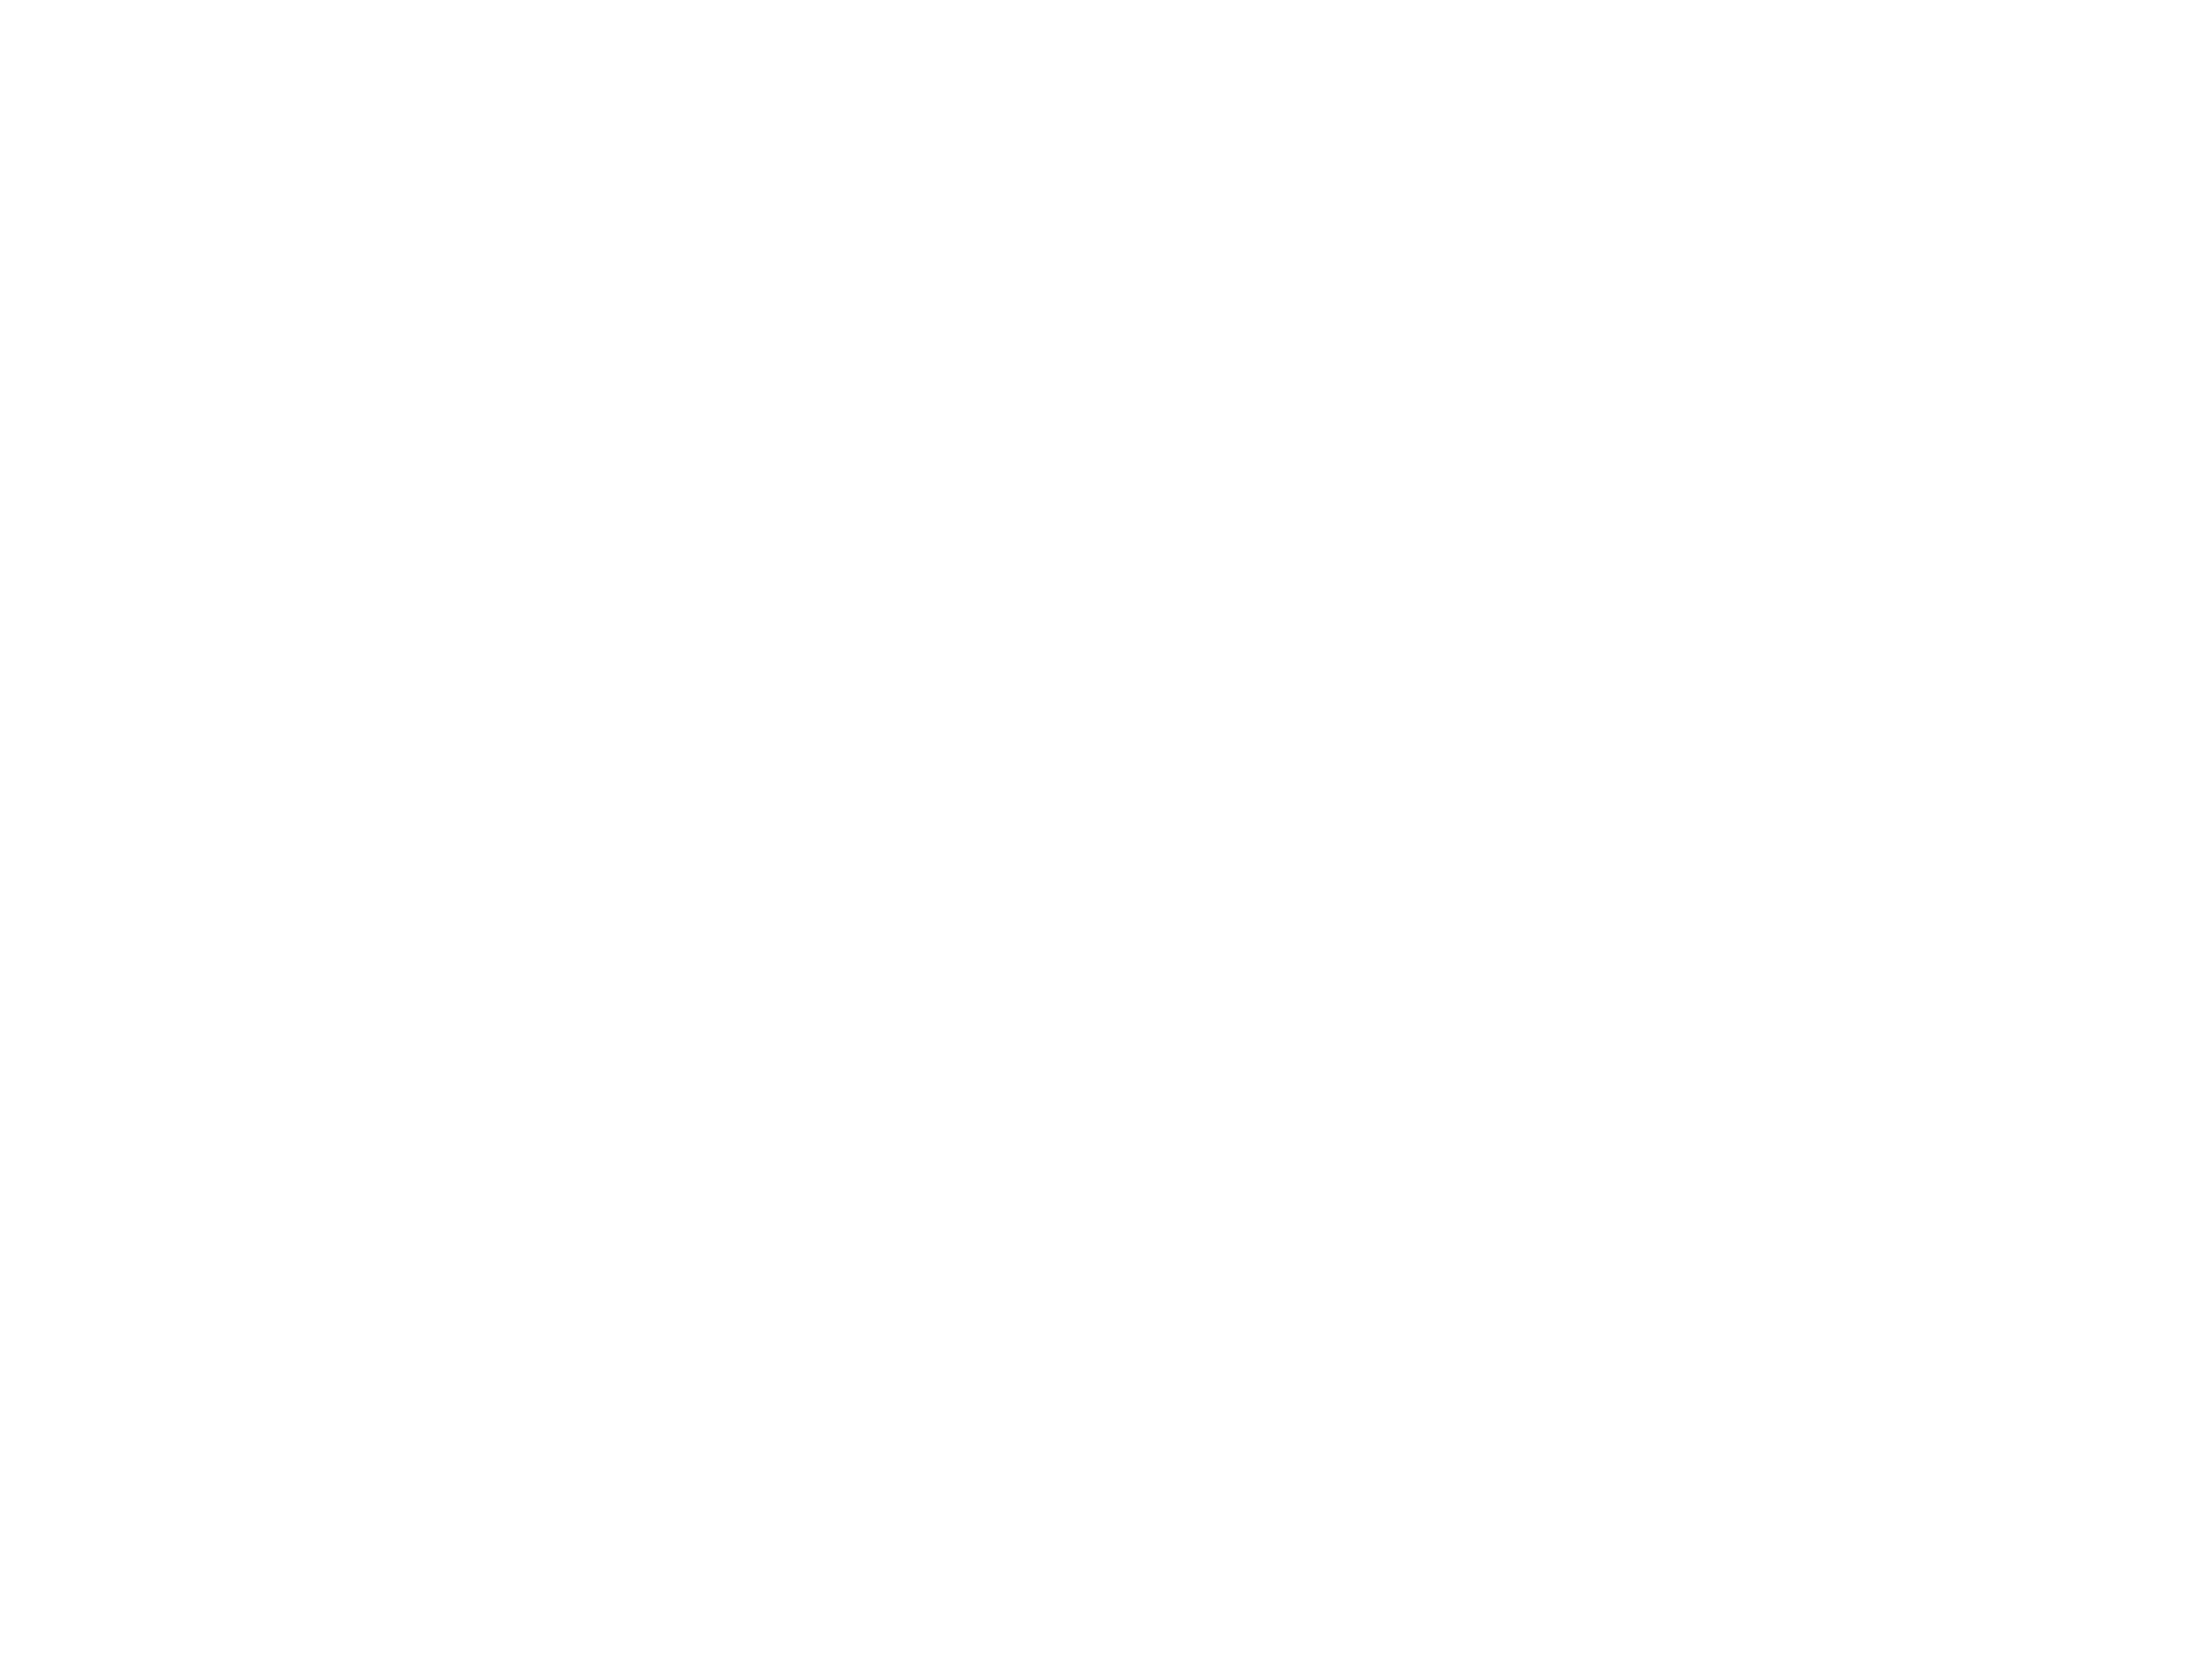 LawyersBlvd